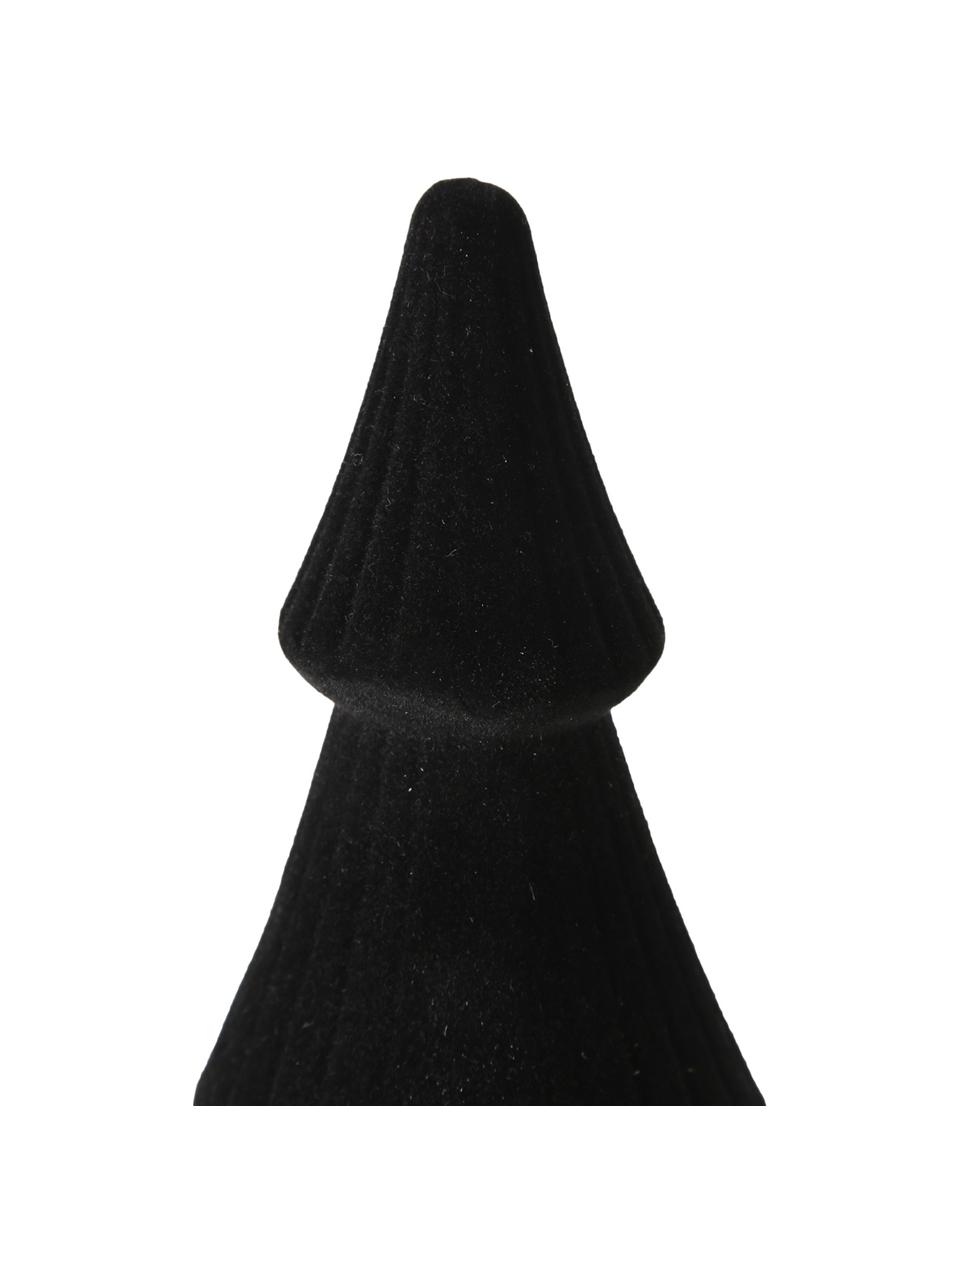 Samt-Deko-Objekt Sabina, Bezug: Samt, Gestell: Mitteldichte Holzfaserpla, schwarz, Ø 10 x H 24 cm